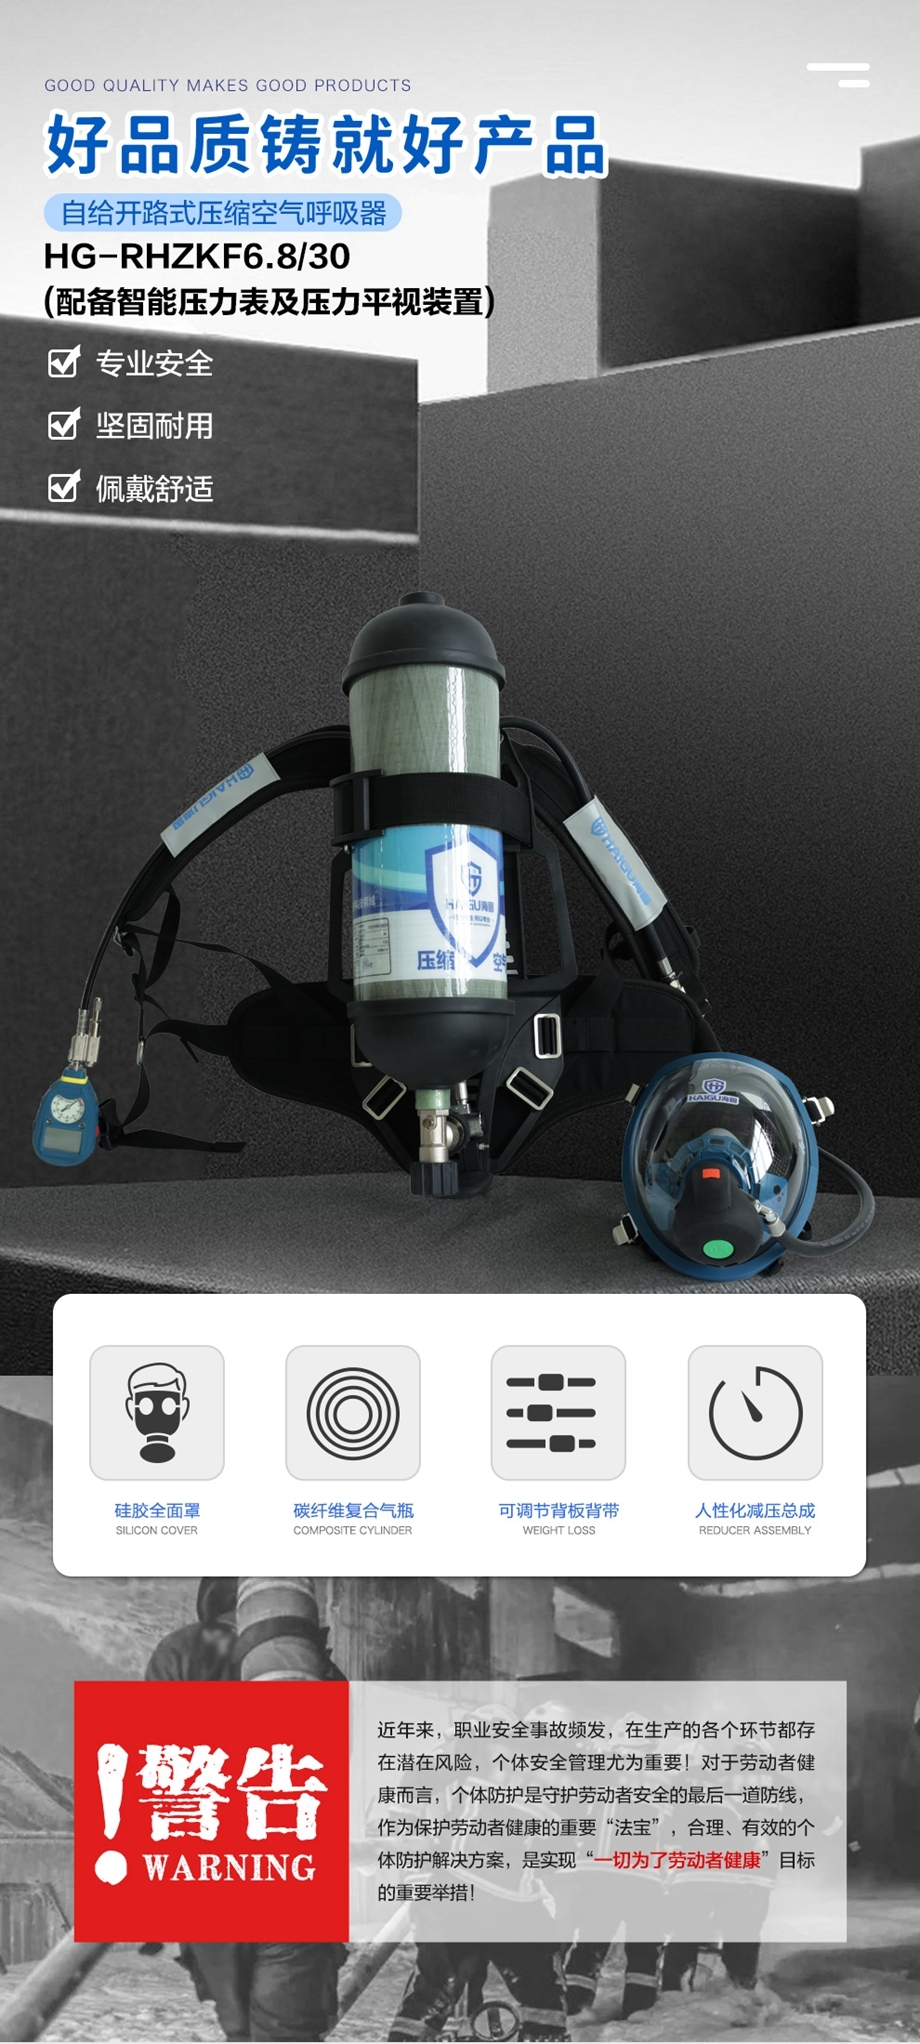 海固RHZKF6.8/30 正压式空气呼吸器(配备智能压力表及压力平视装置）